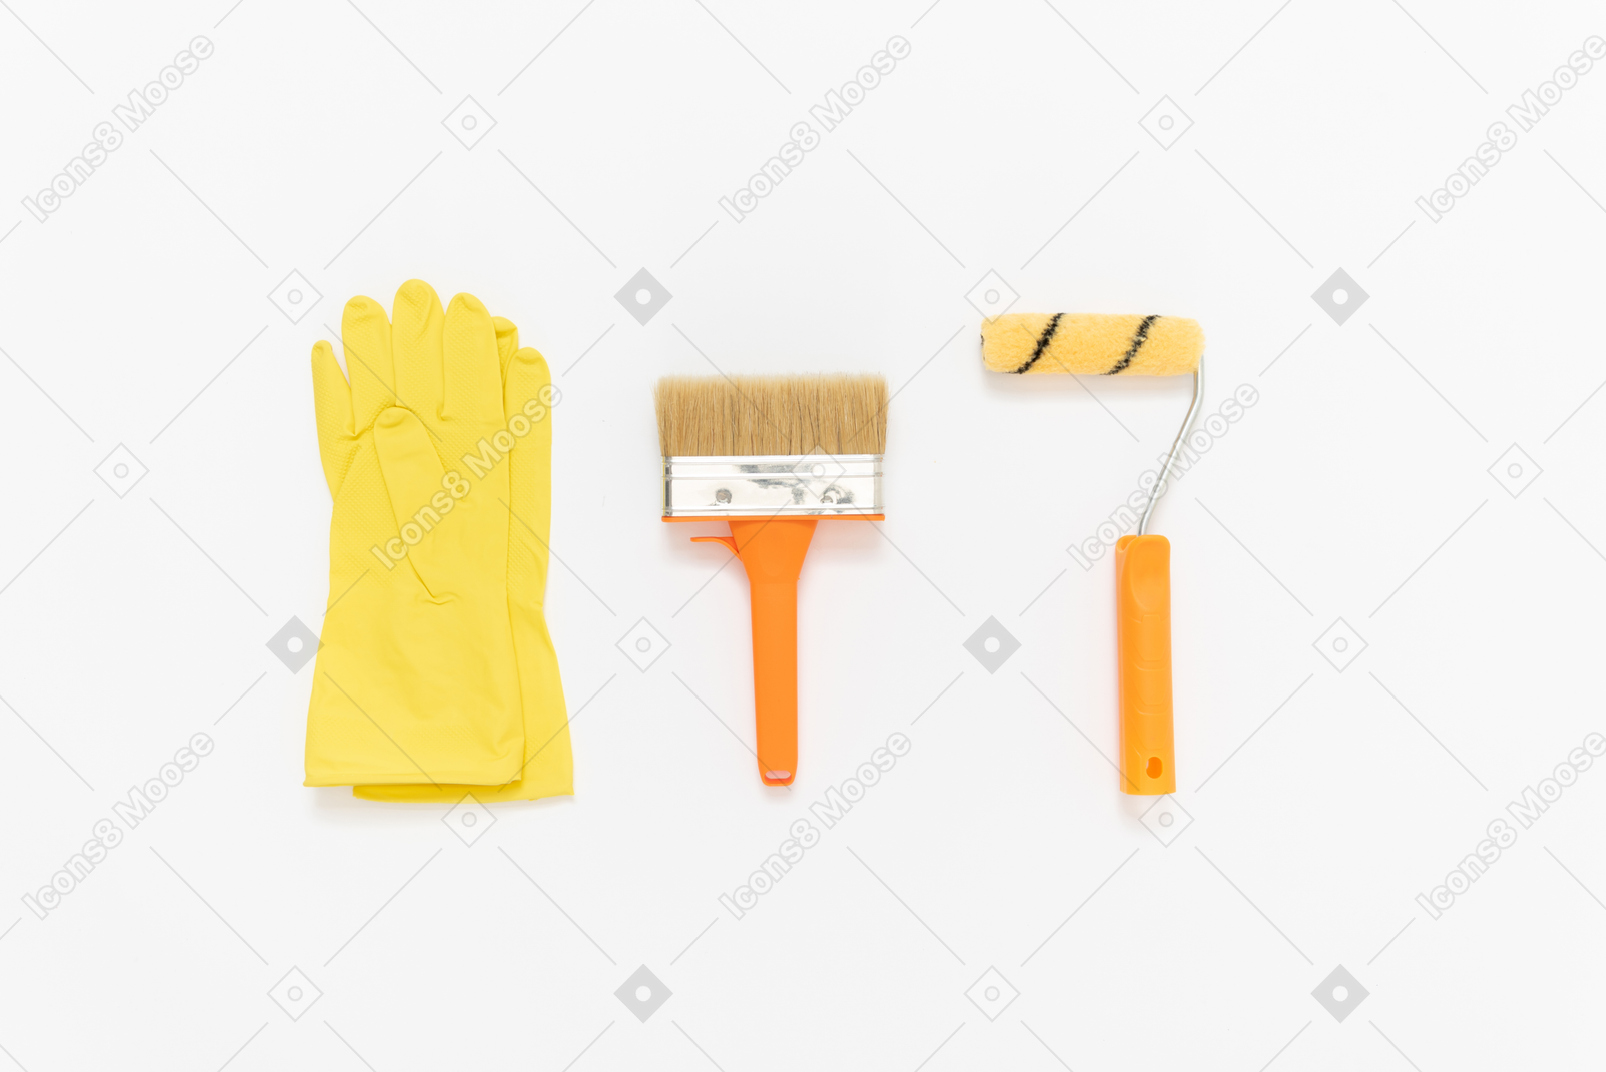 Un conjunto de herramientas de pintura ordenadas cuidadosamente sobre el fondo blanco.